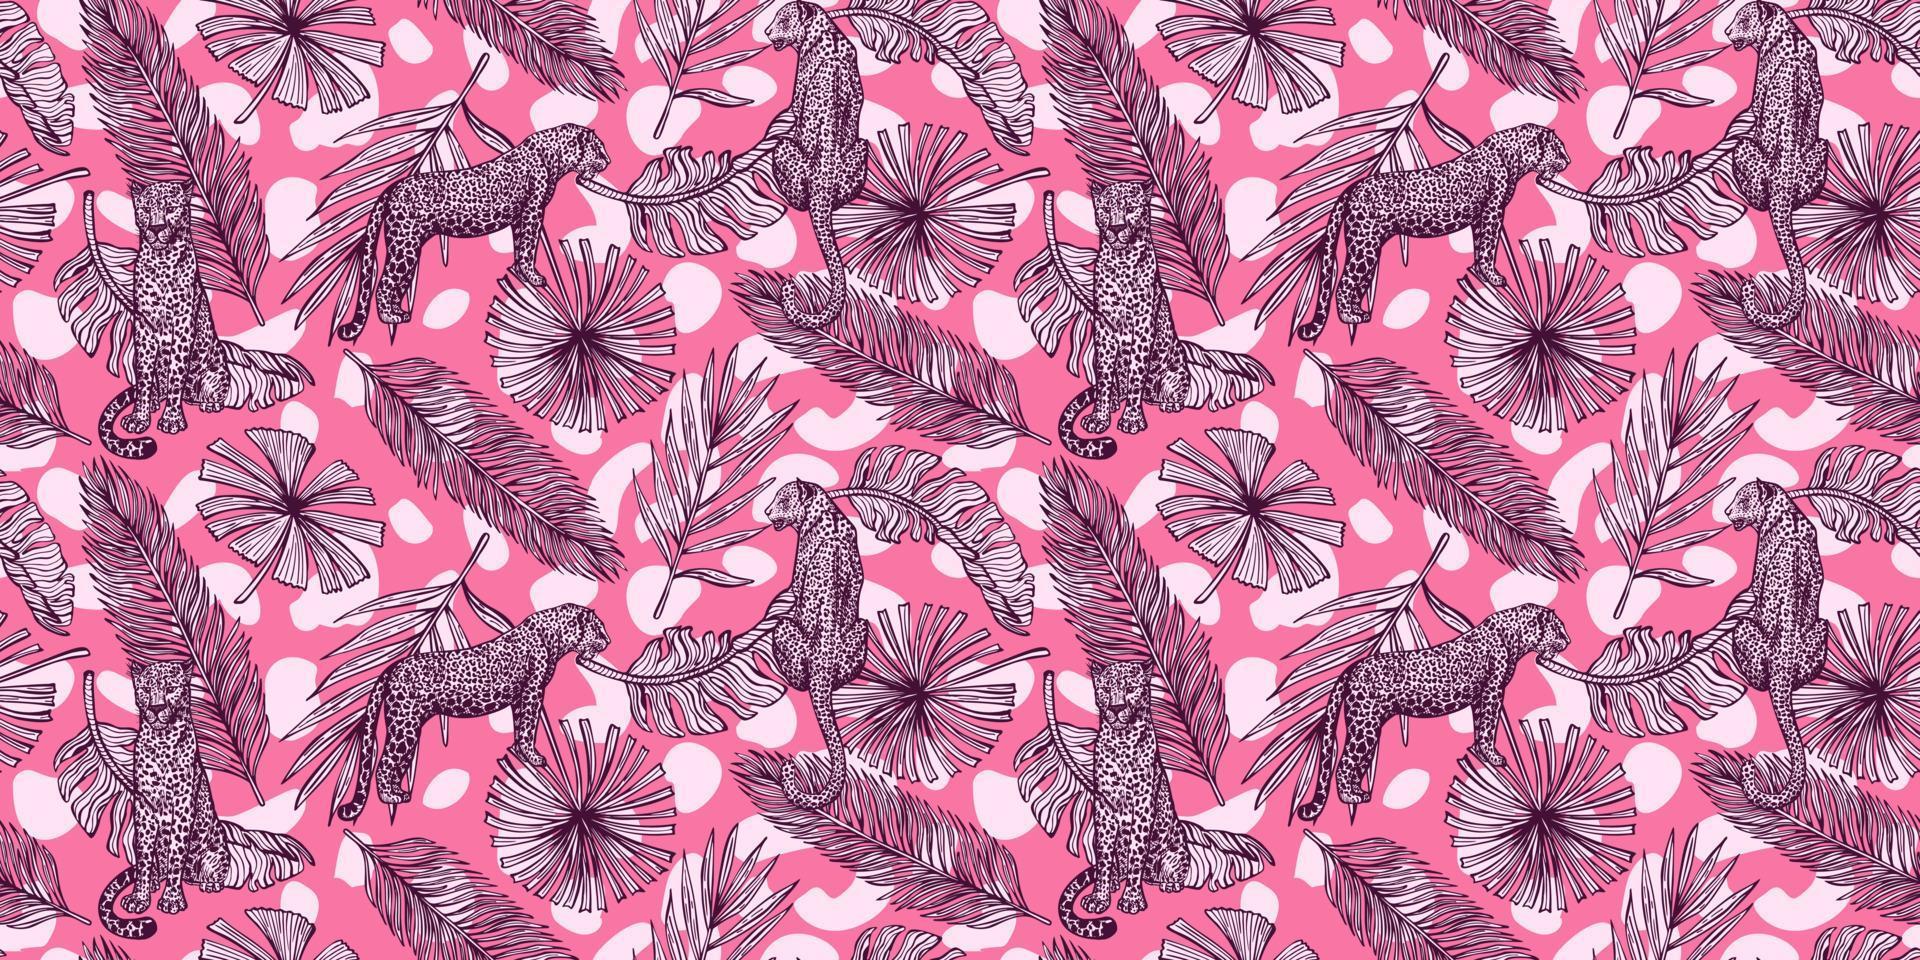 padrão sem emenda de vida selvagem de savana no fundo rosa. leopardo vintage, folhas, manchas em estilo de gravura. vetor